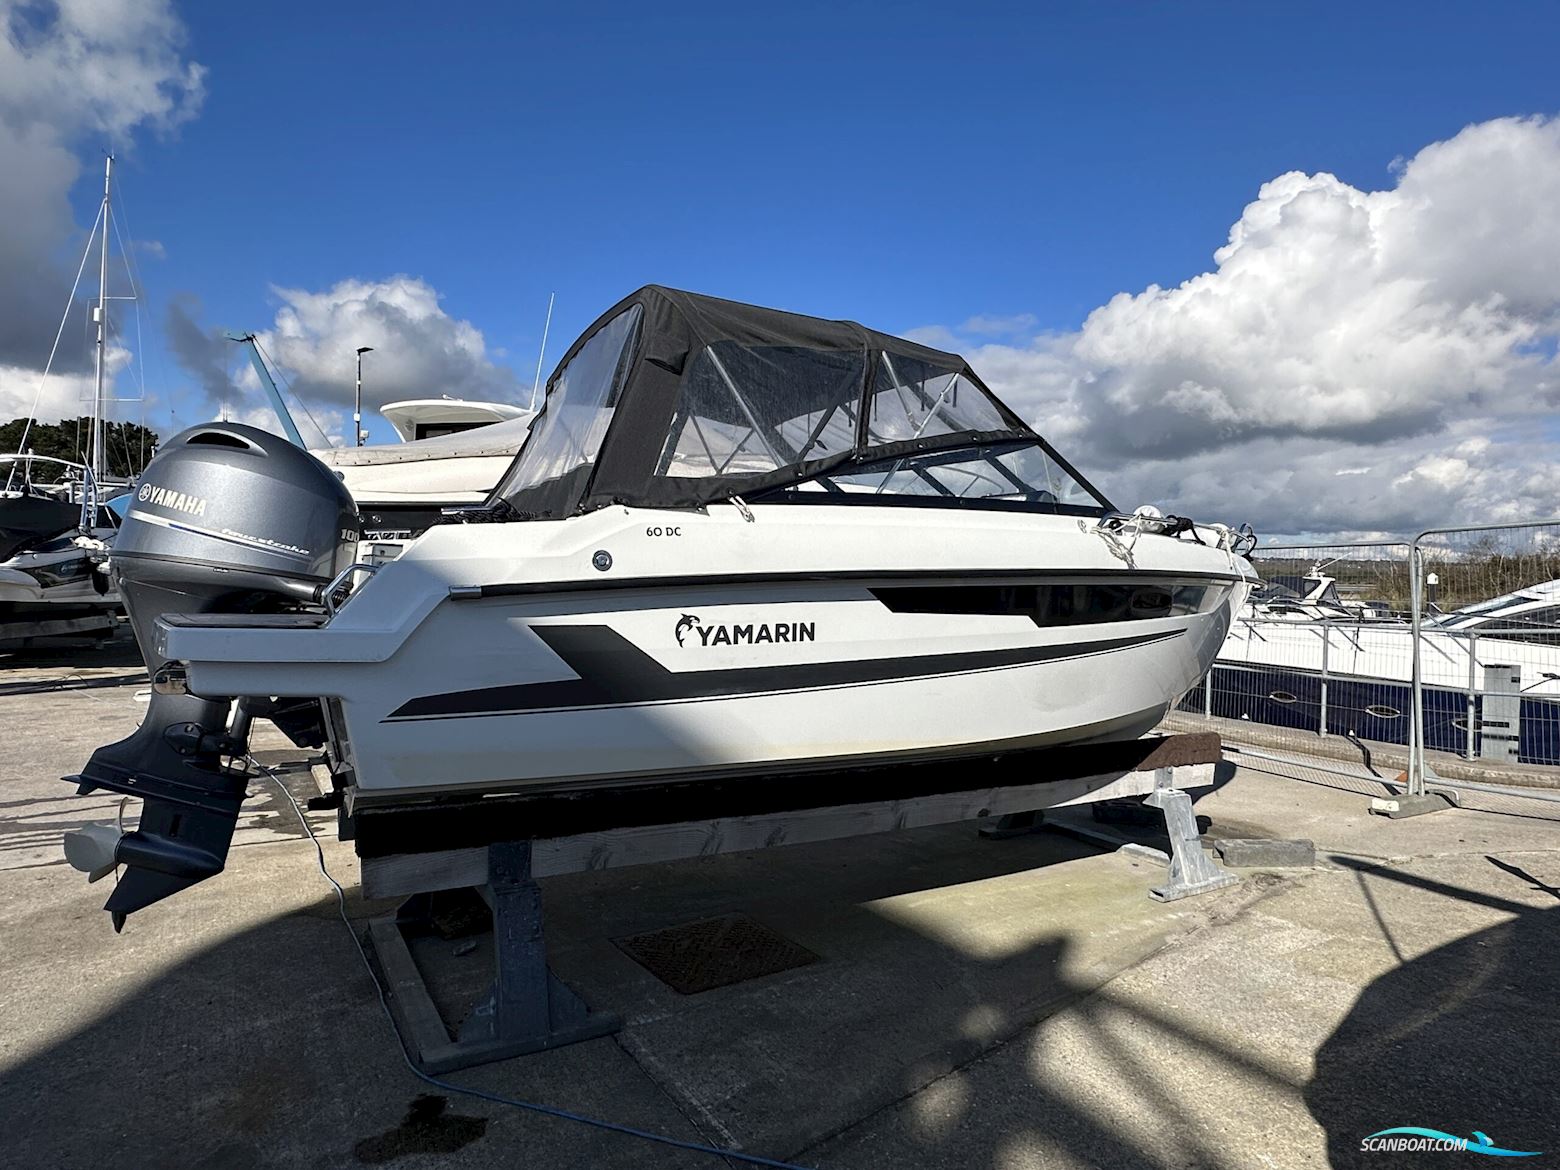 Yamarin 60 DC Motor boat 2022, with Yamaha F100Fetx engine, United Kingdom